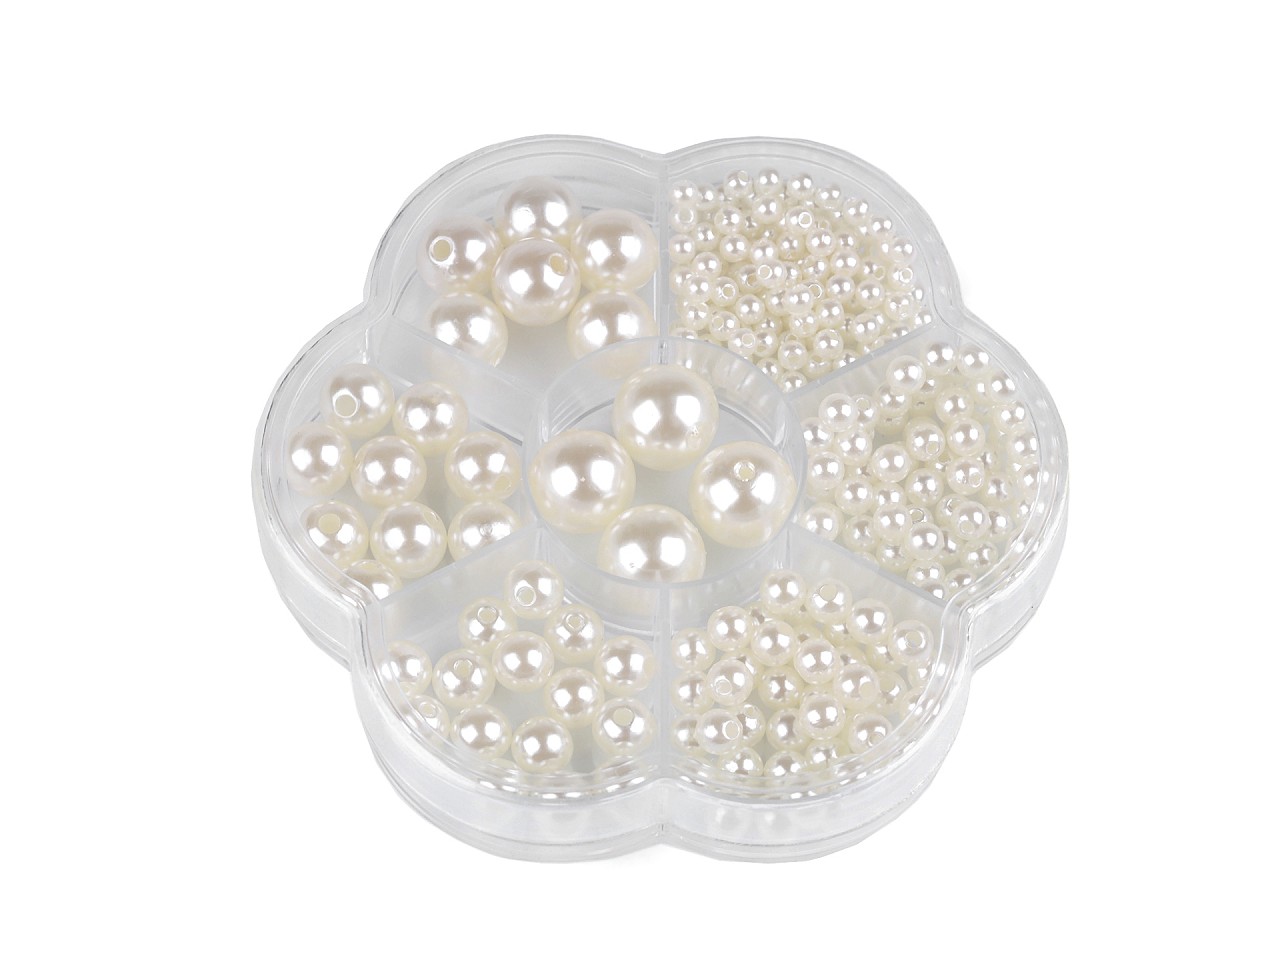 Textillux.sk - produkt Súprava plastových voskových korálikov v boxe - 2 perlová